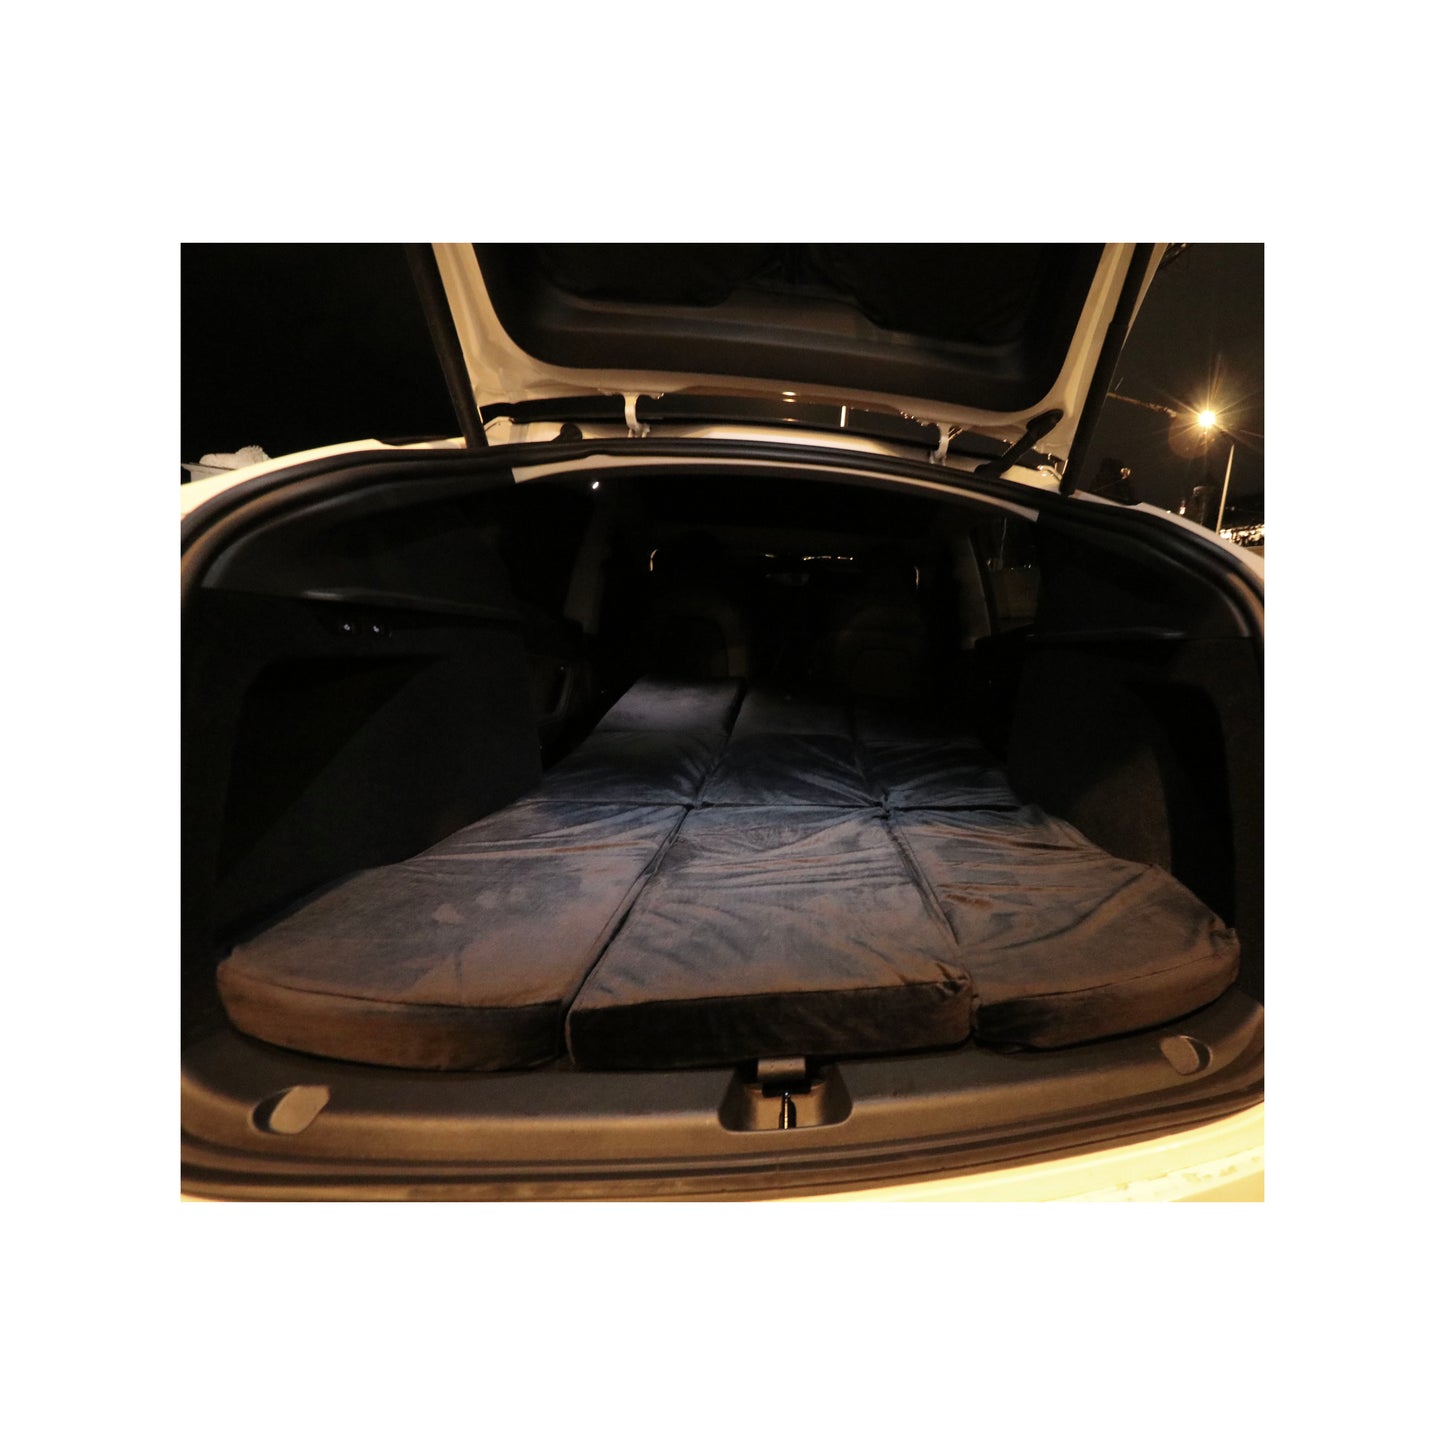 EV-MATS Tesla Model 3 Matratze und Tragetasche ist eine Premium-Memory-Schaumstoffmatratze, die perfekt in die Abmessungen des Tesla Model 3 passt, bietet perfekten Schlafkomfort und kann im Kofferraum verstaut werden.